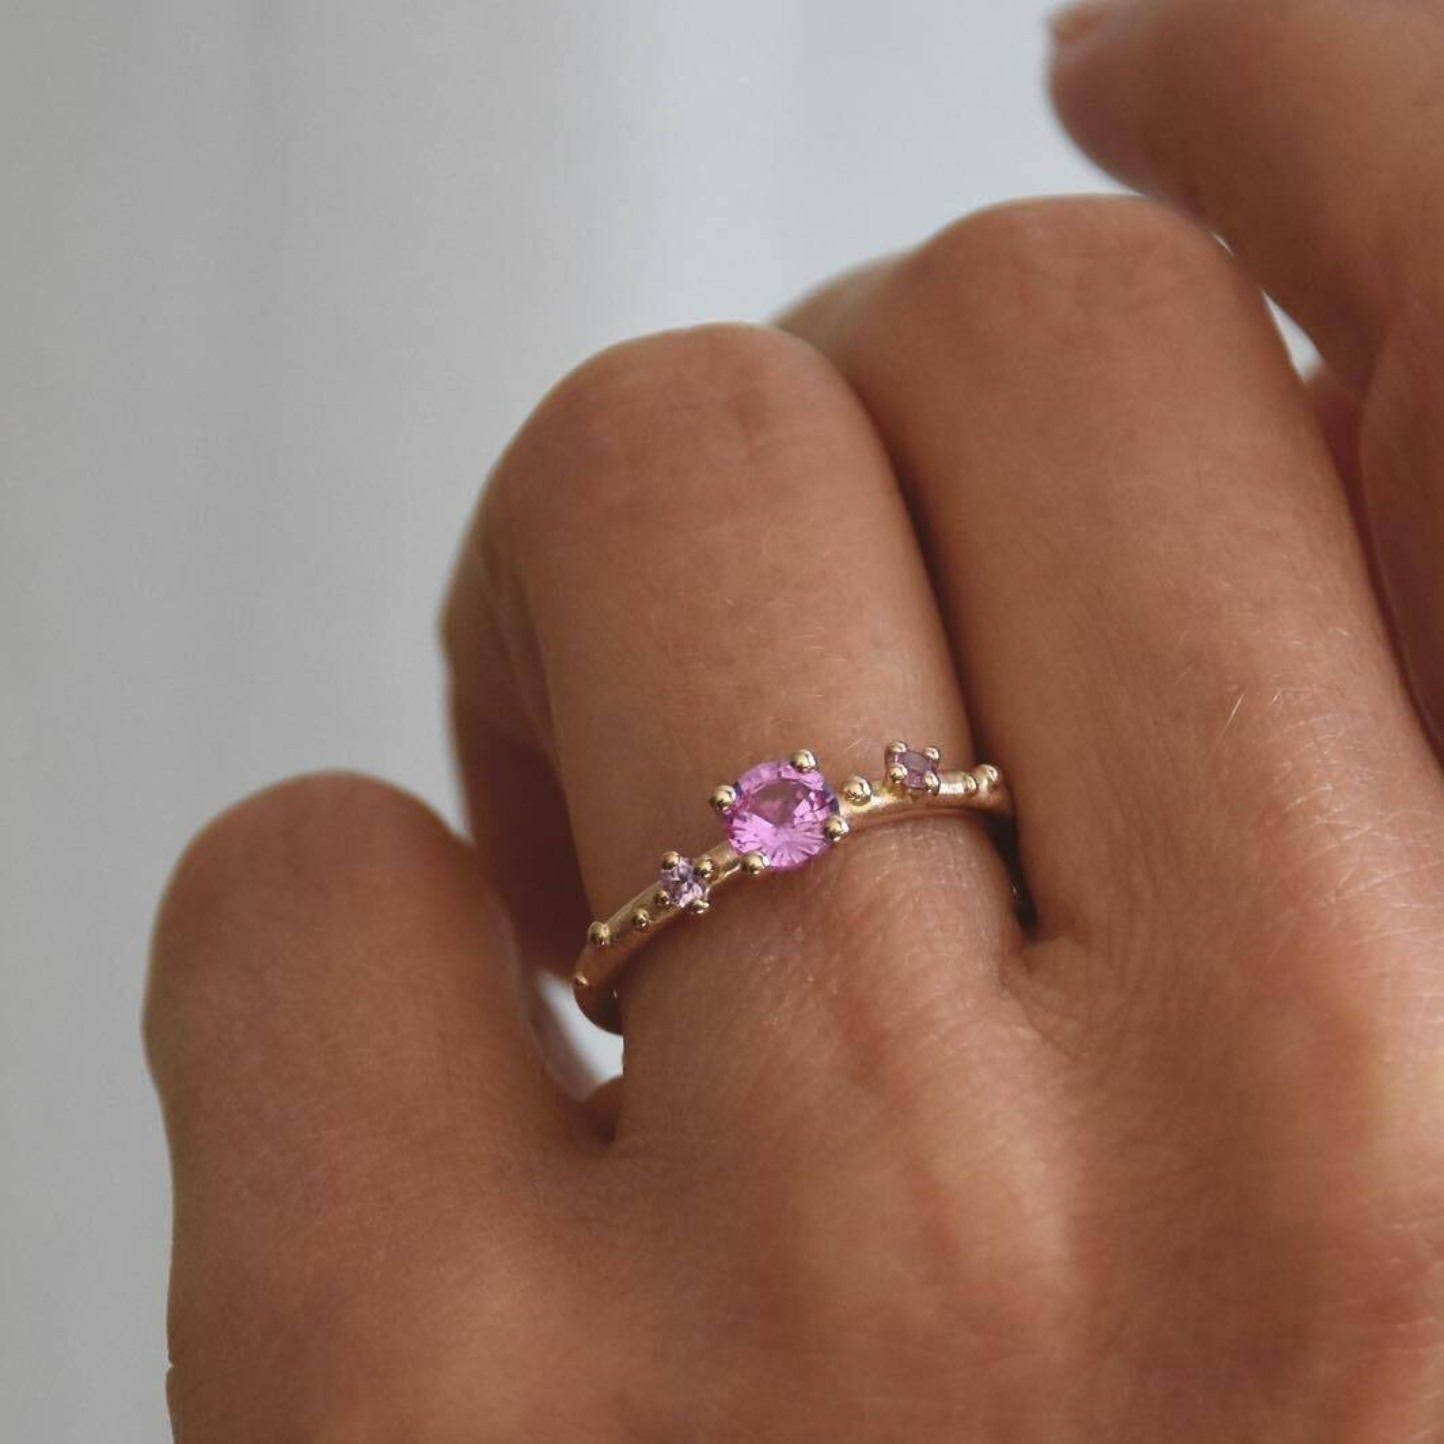 Shine-ring "Pink" i gull med safirer